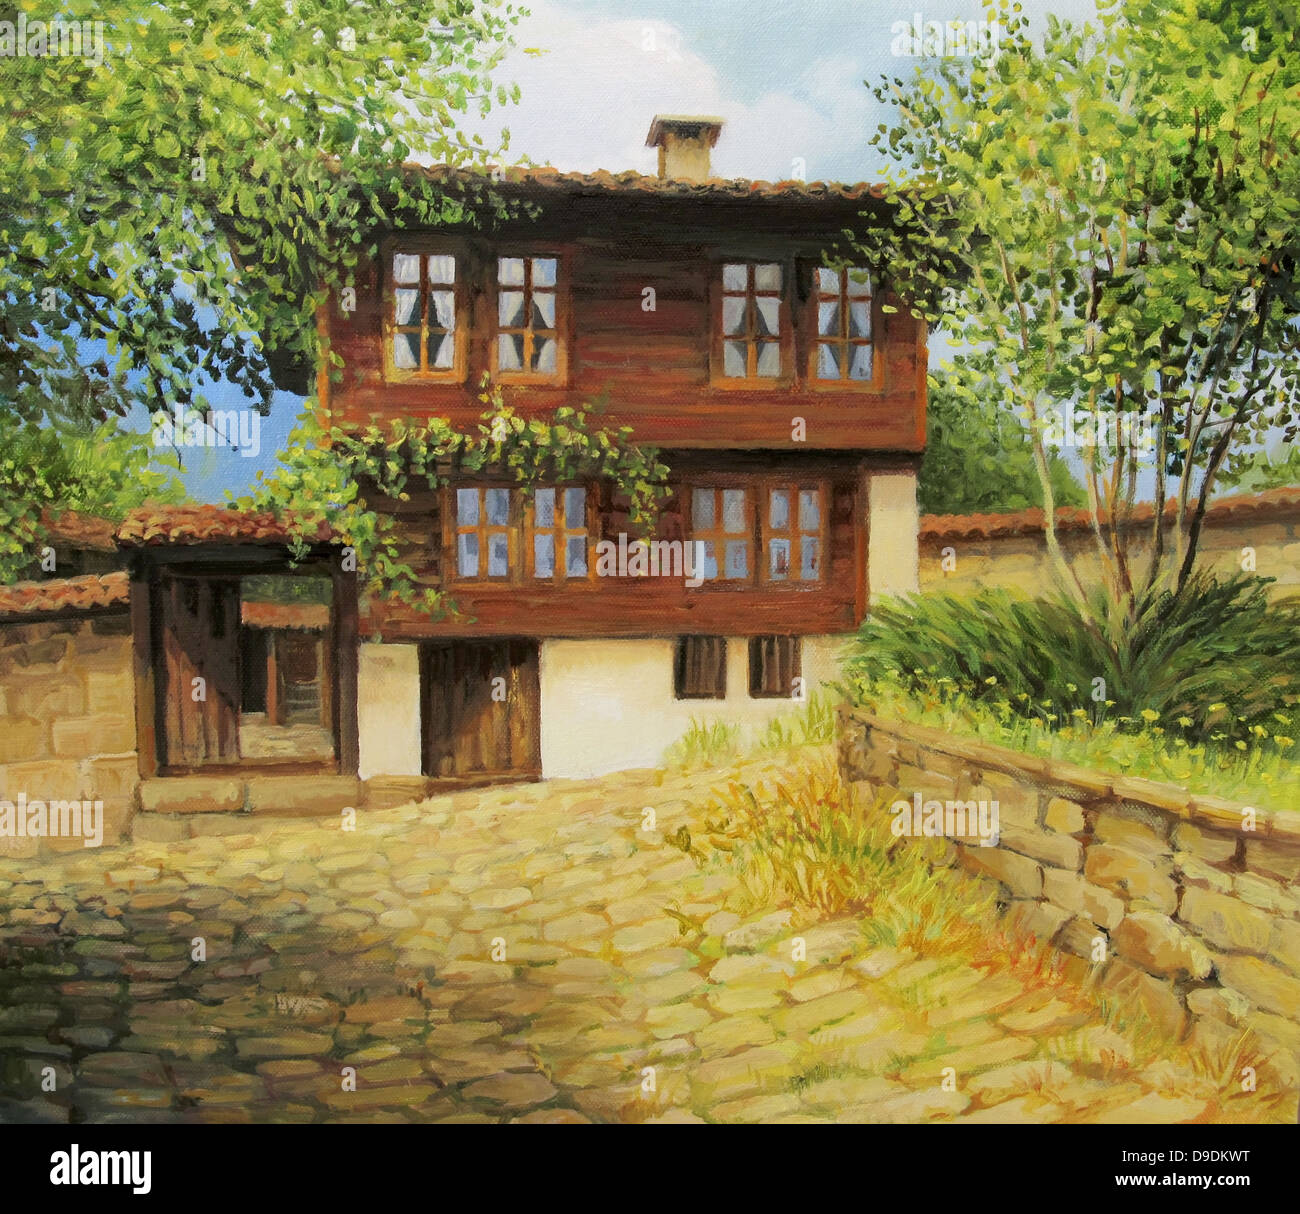 Un dipinto ad olio su tela di una vecchia casa storica nella piccola cittadina rurale Kotel, Bulgaria all'inizio dell'autunno. Foto Stock